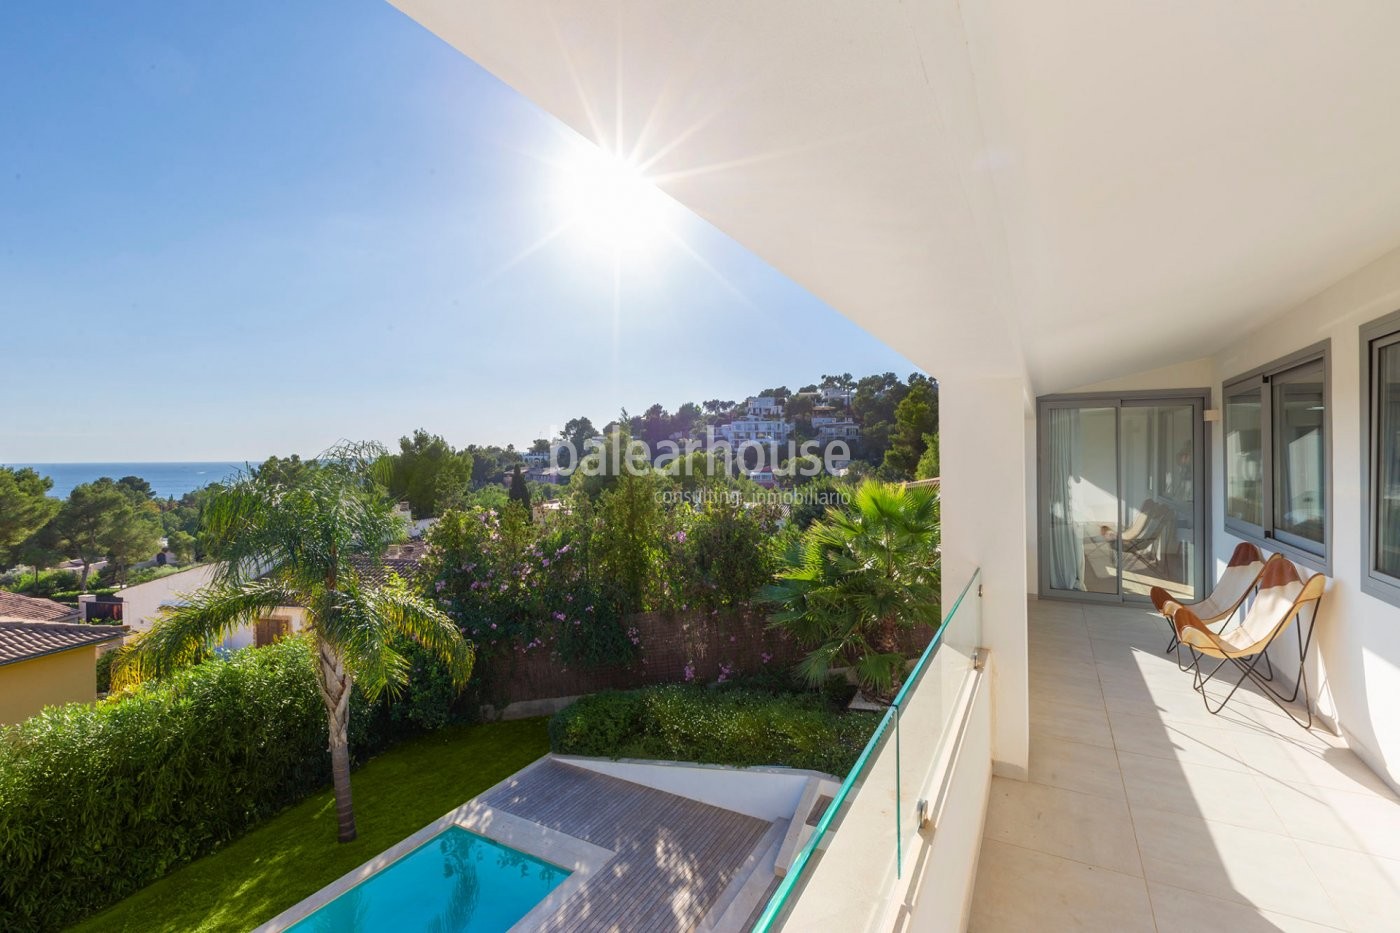 Ausgezeichnete Renovierung dieser Villa in Costa d'en Blanes mit Schwimmbad, Garten und schönem Meer